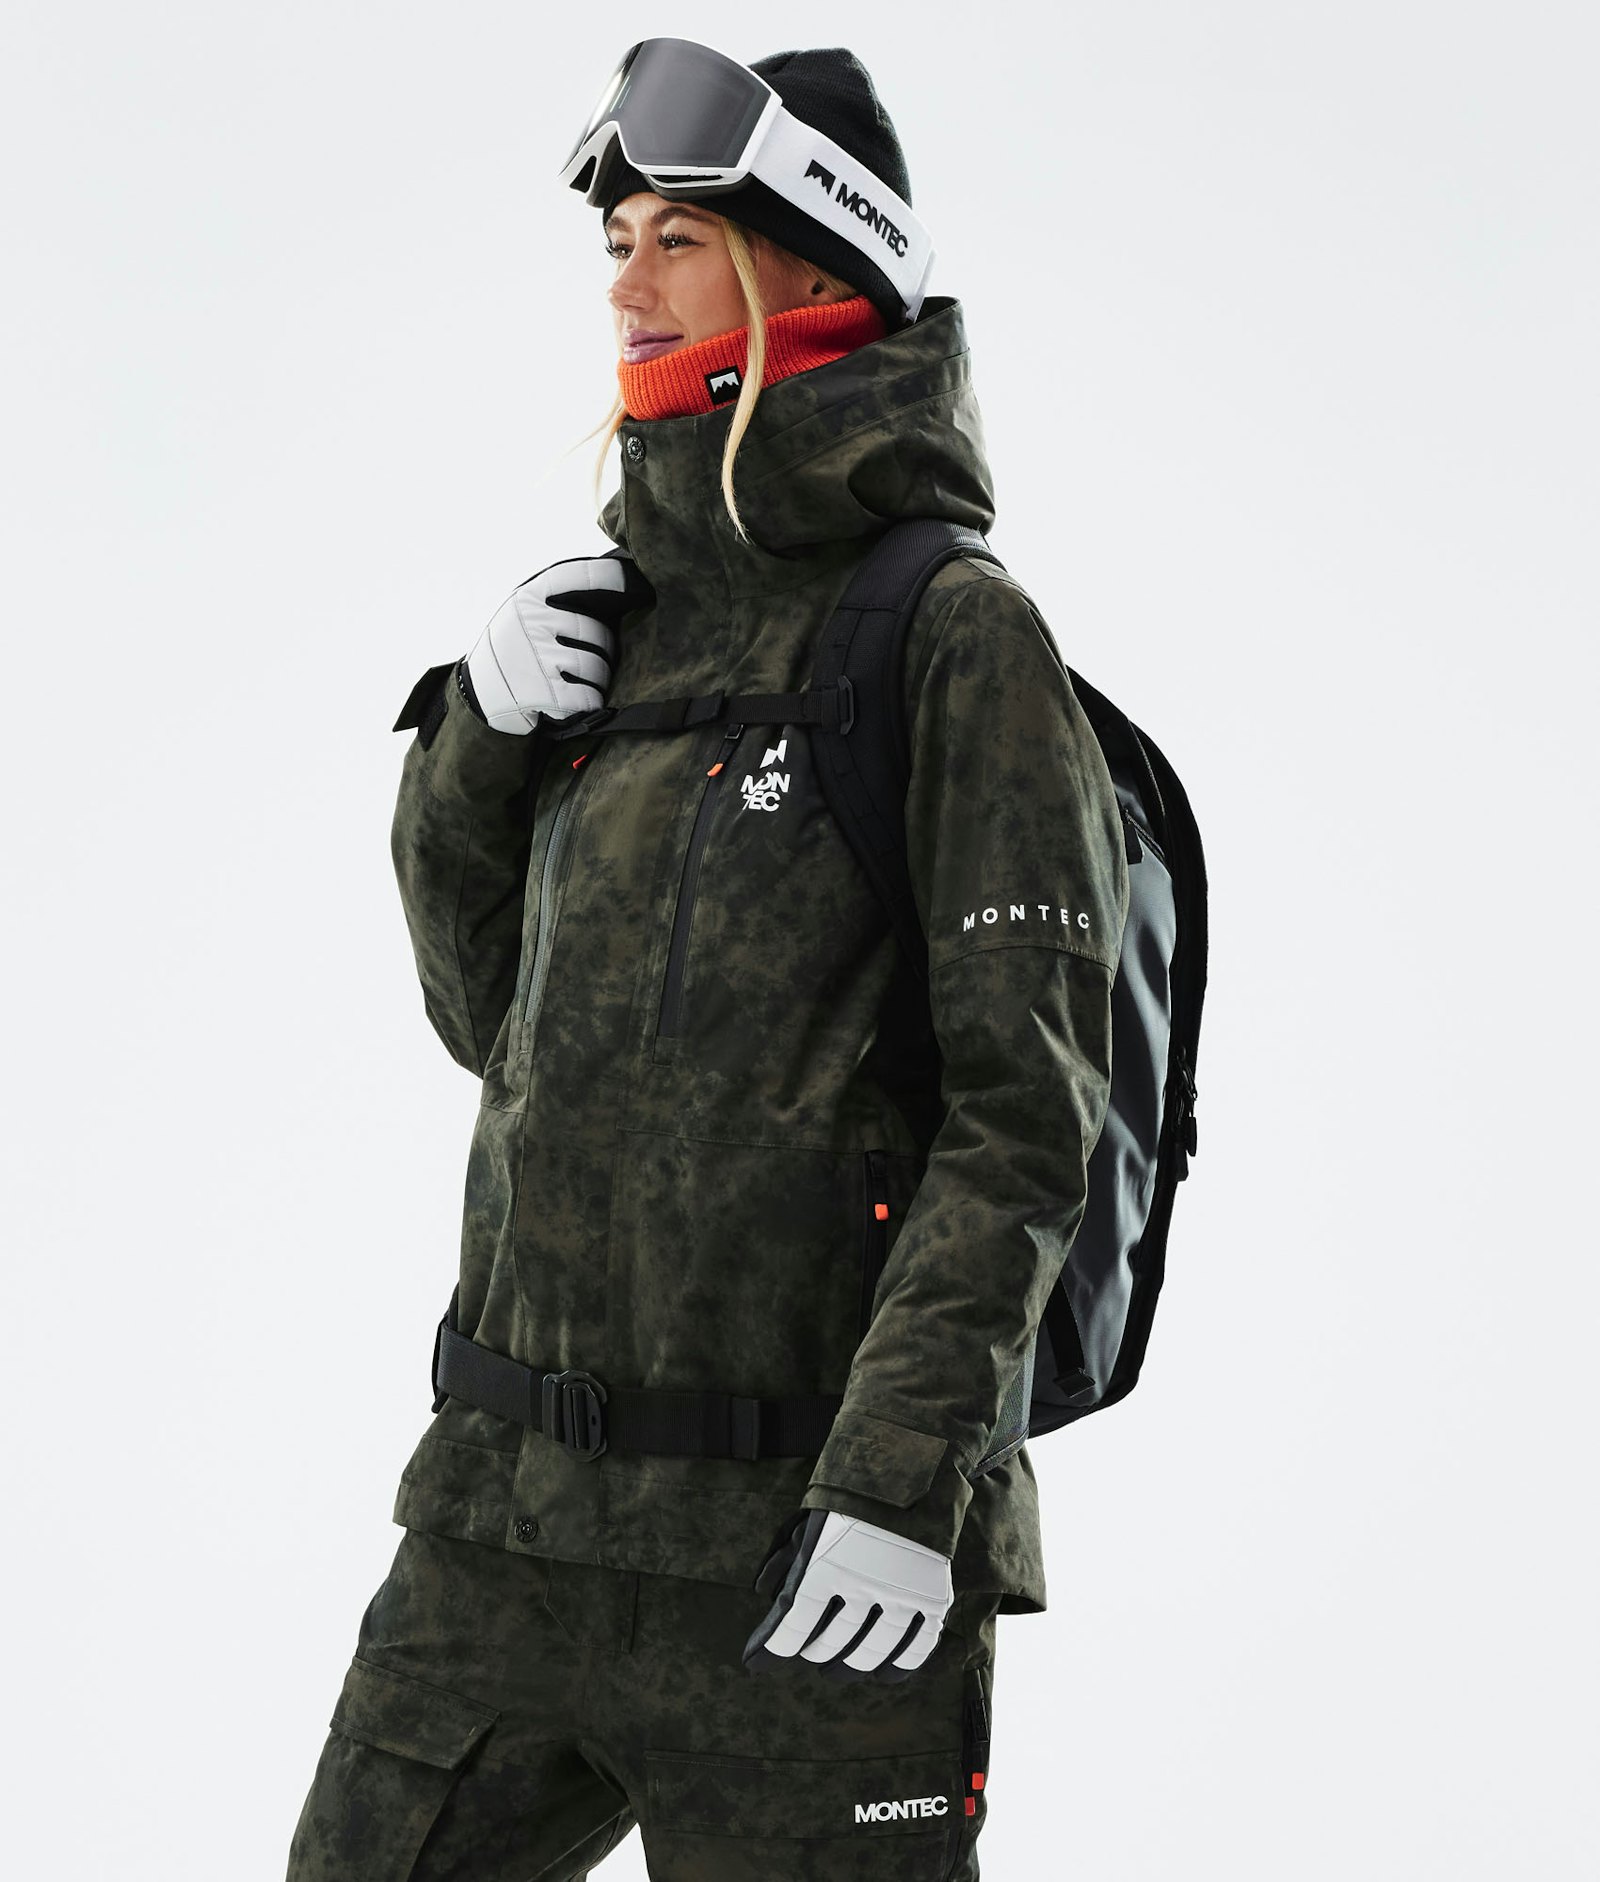 Fawk W 2021 Snowboard Jacket Women Olive Green Tiedye, Image 1 of 12